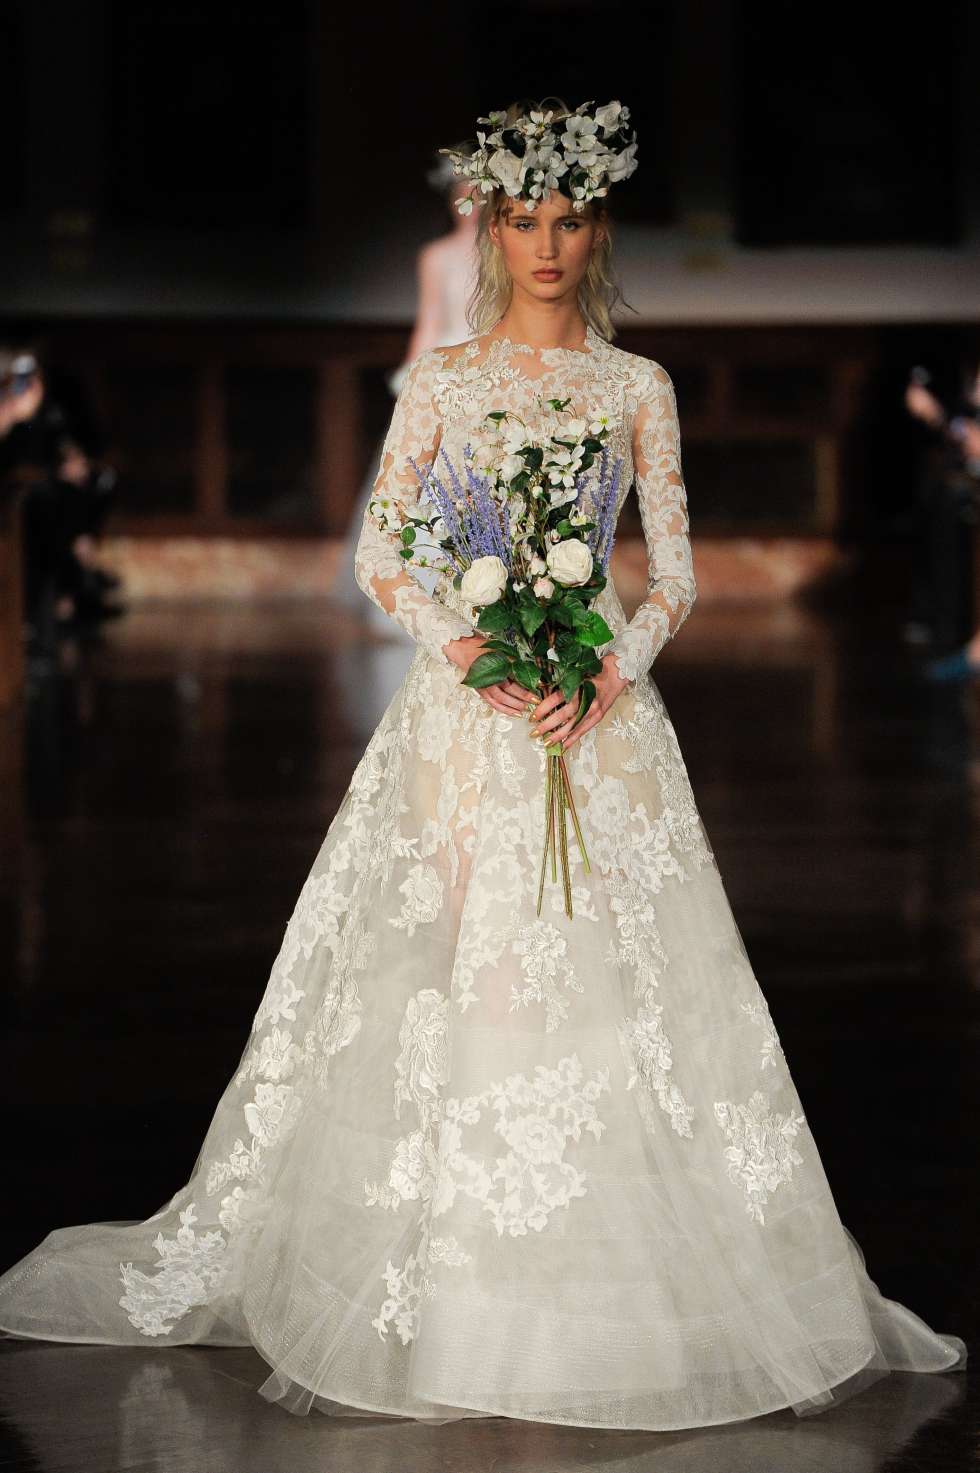 2019 wedding dress by Reem Acra